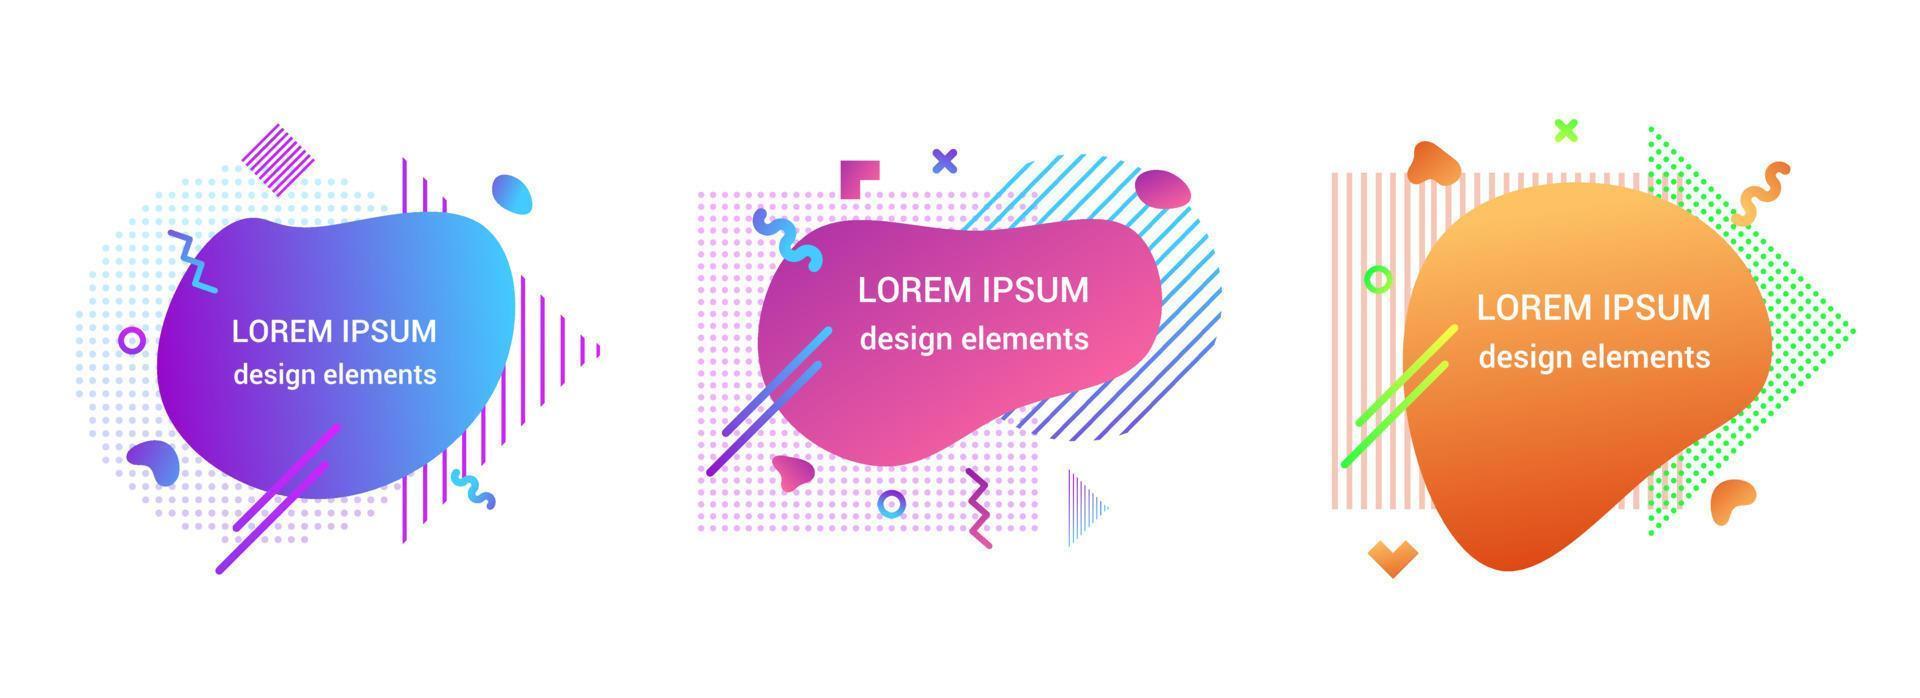 moderno liquido elemento astratto gradiente grafico stile piatto design fluido vettore colorato illustrazione set banner forma semplice modello per presentazione, volantino, isolato su sfondo bianco.